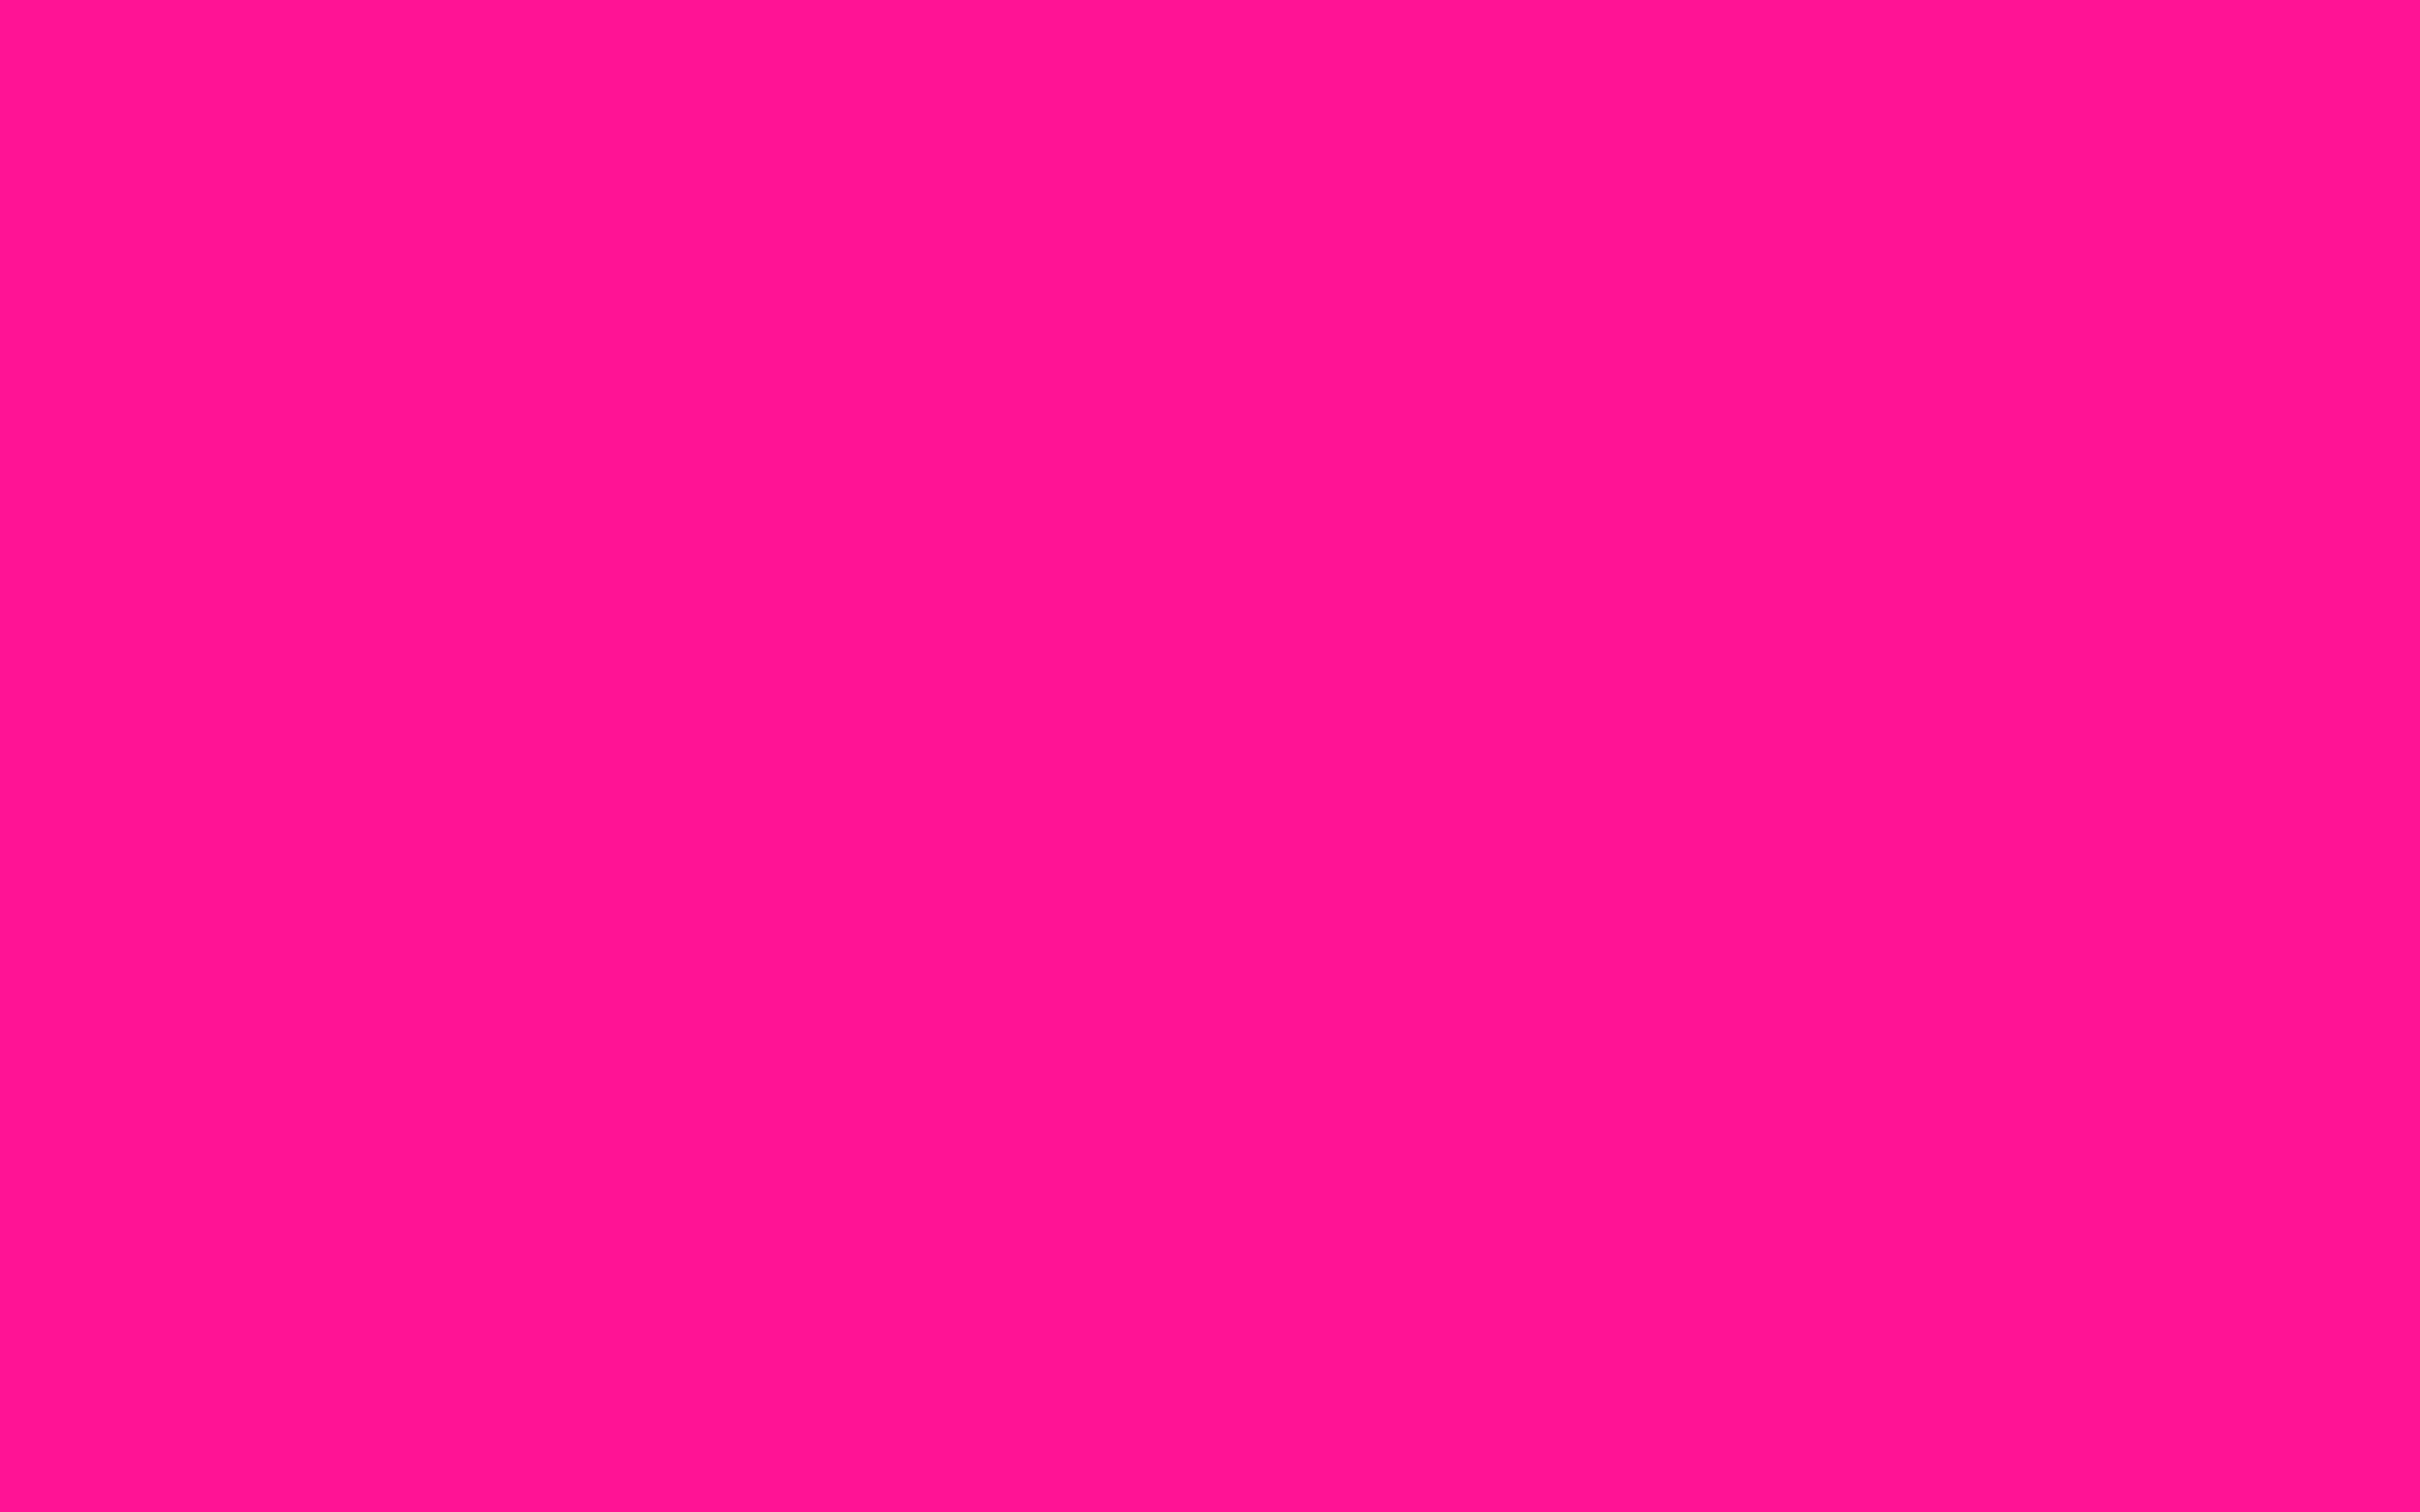 Hình nền màu hồng (Pink color wallpapers) Màu hồng là màu của sự nữ tính, dịu dàng và tình yêu. Hãy đem sắc hồng đến màn hình điện thoại của bạn với hình nền màu hồng của chúng tôi! Chúng tôi cung cấp đa dạng các loại hình nền màu hồng, phù hợp với mọi cá tính và sở thích của bạn.